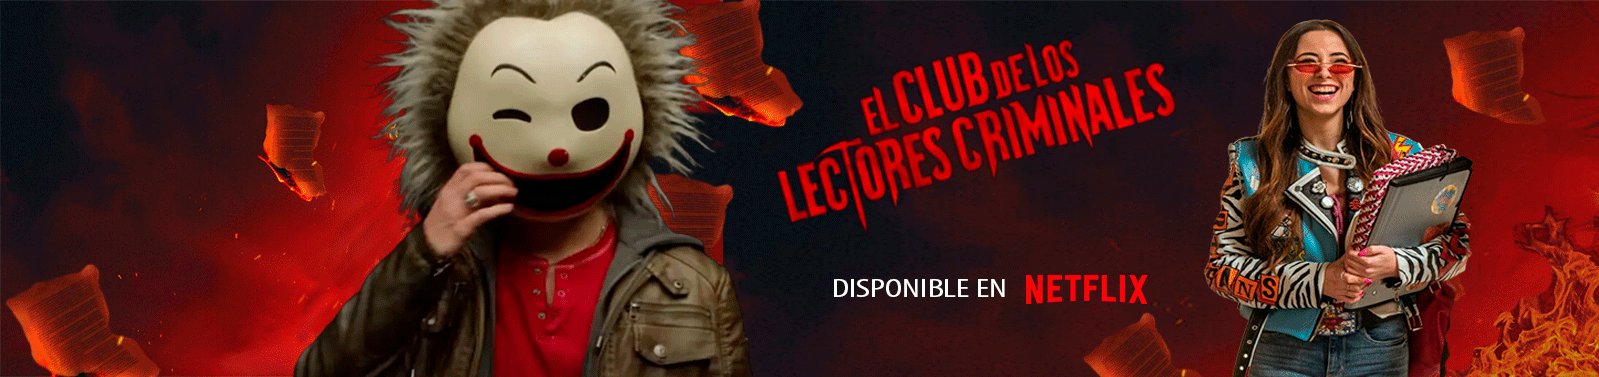 Ane Rot estrena 'El Club de Los Lectores Criminales' en Netflix